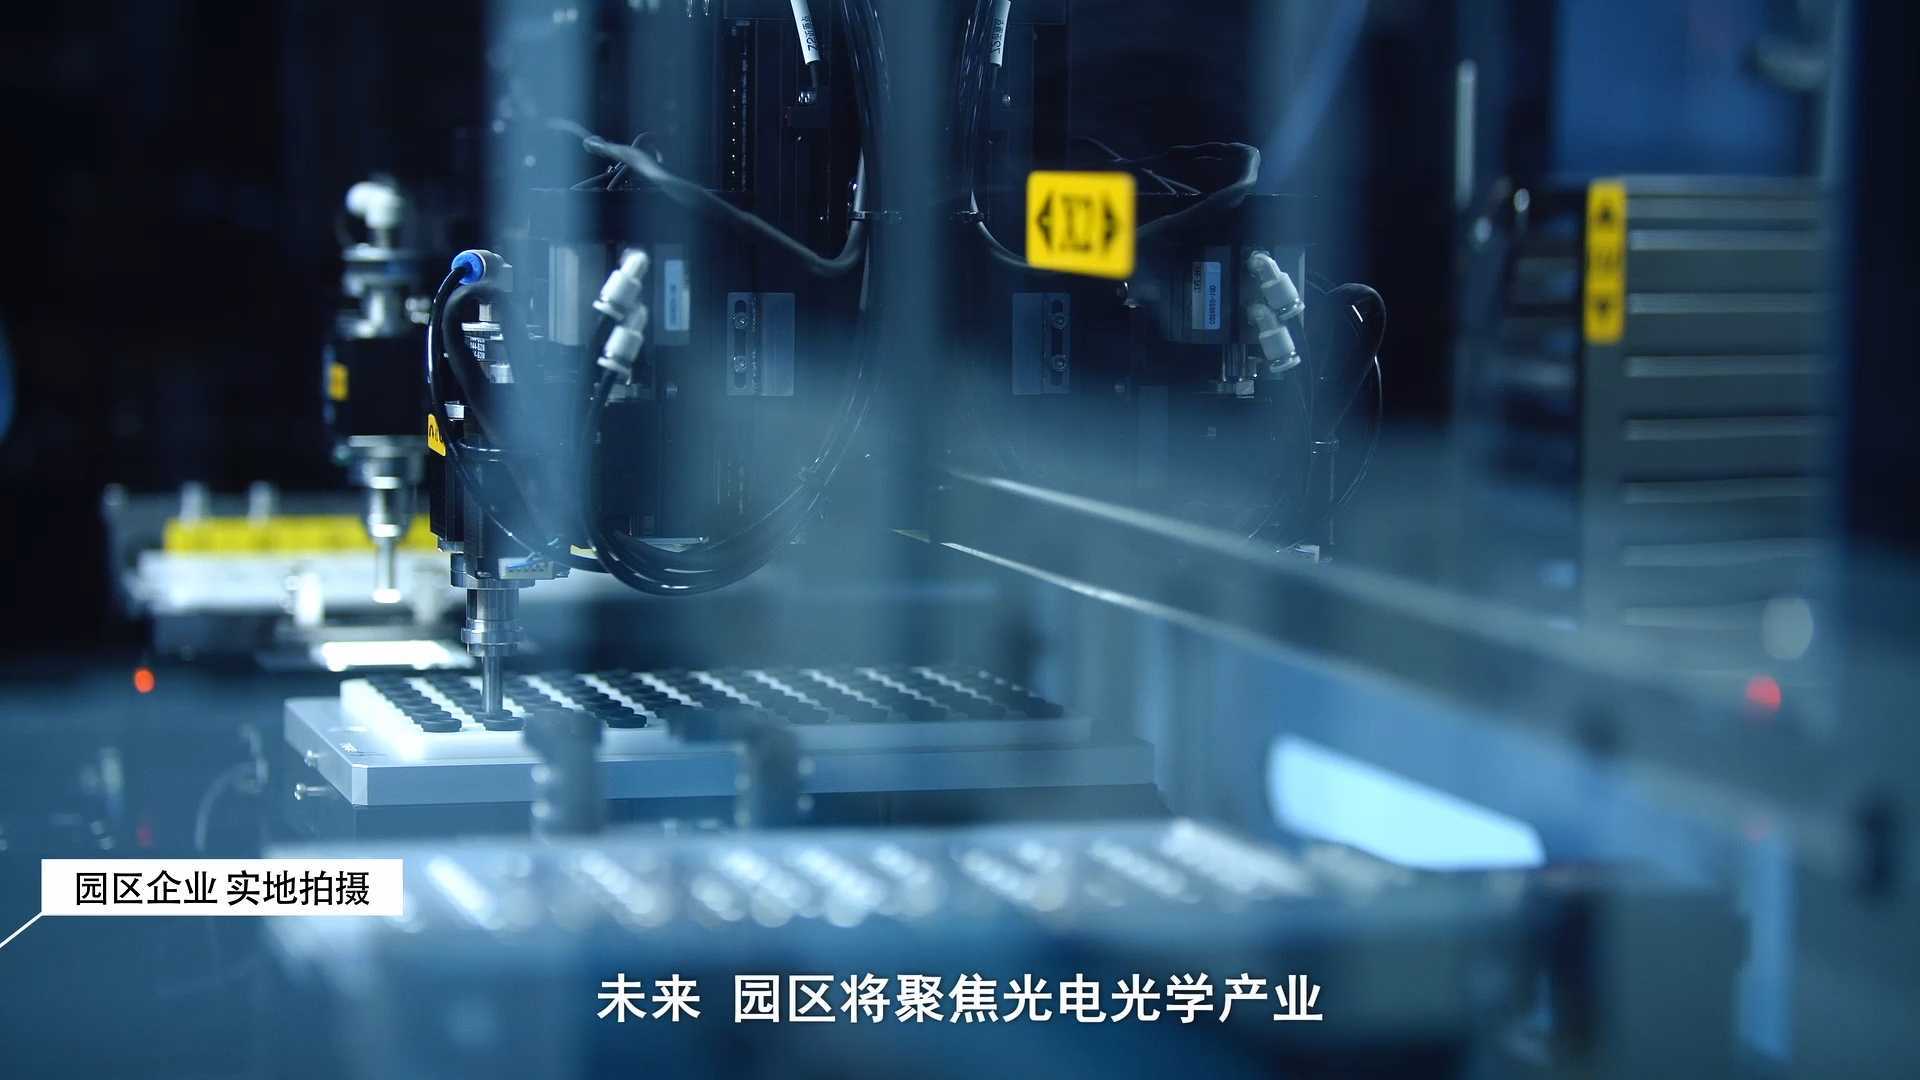 国辰高新技术产业园宣传片